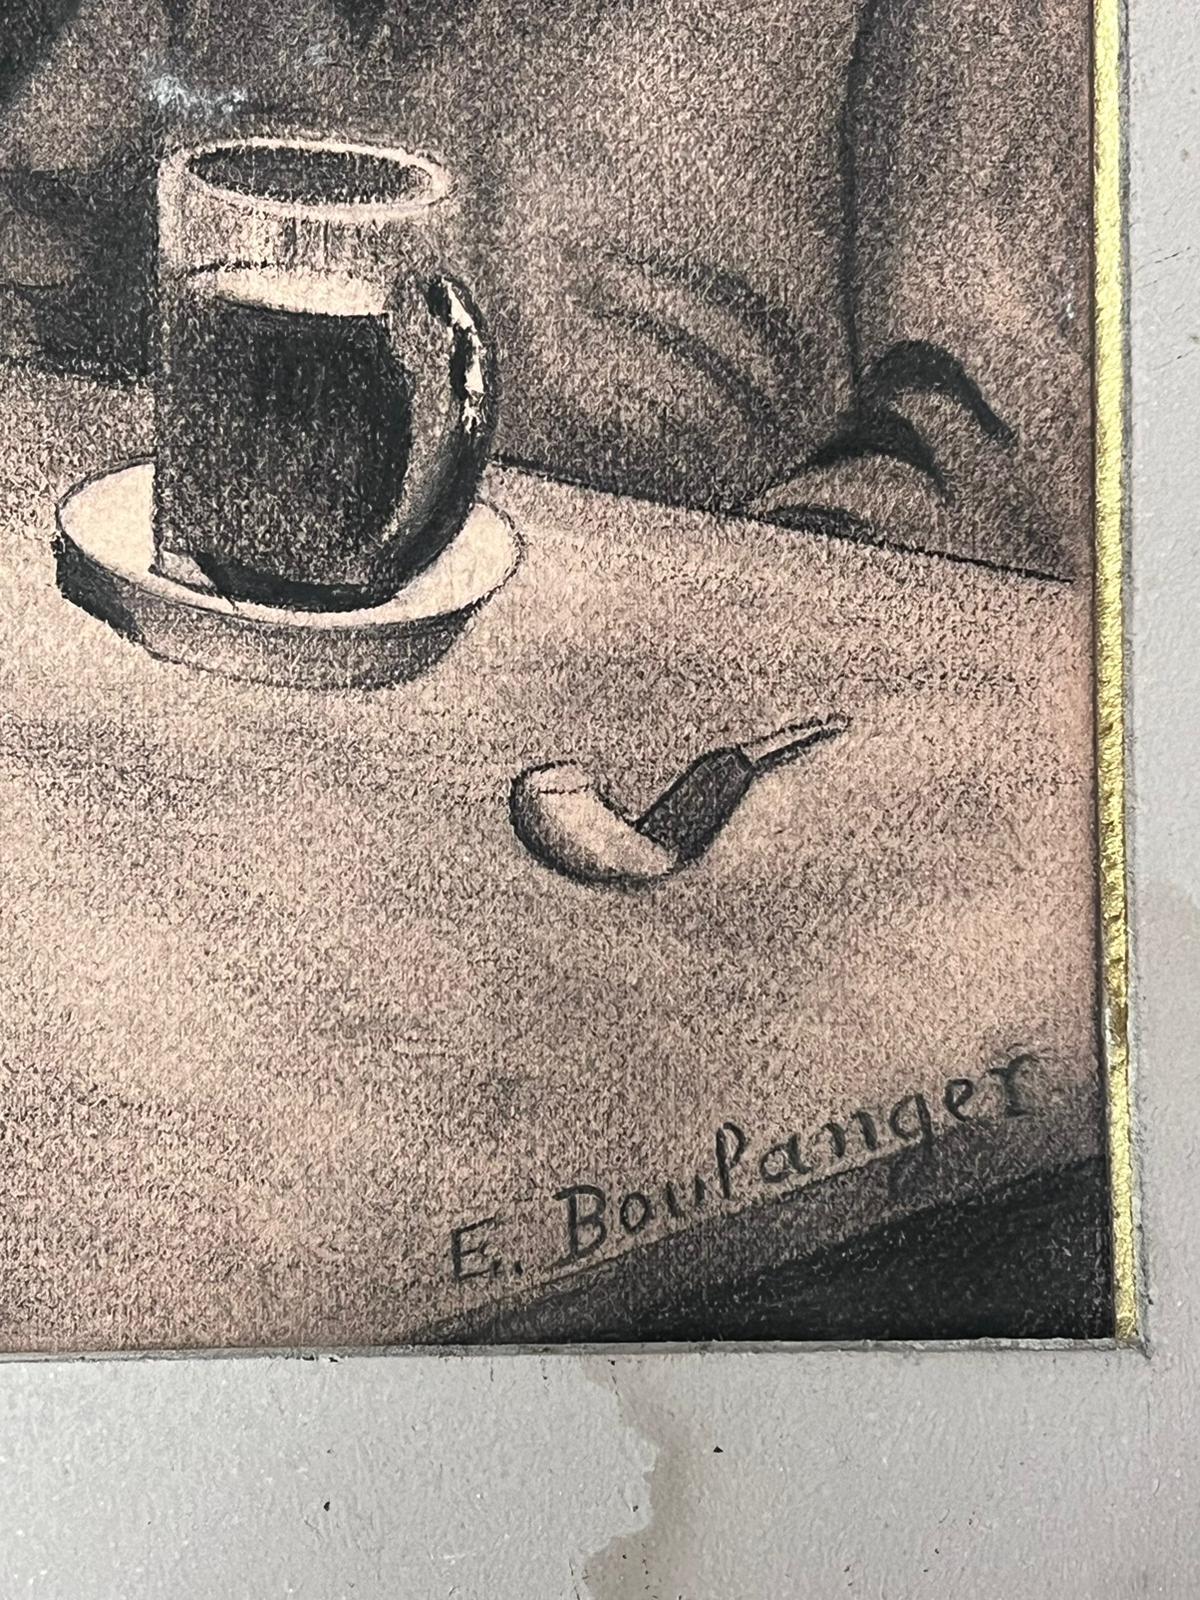 Die Bar
Französischer Künstler, signiert, 
ca. 1890er Jahre
signierte Kohlezeichnung auf Papier, in Papprahmen montiert
Passepartout: 16 x 19 Zoll
Papier: 13 x 16 Zoll
Provenienz: Privatsammlung, Frankreich
Zustand: ein paar kleine Schrammen, aber